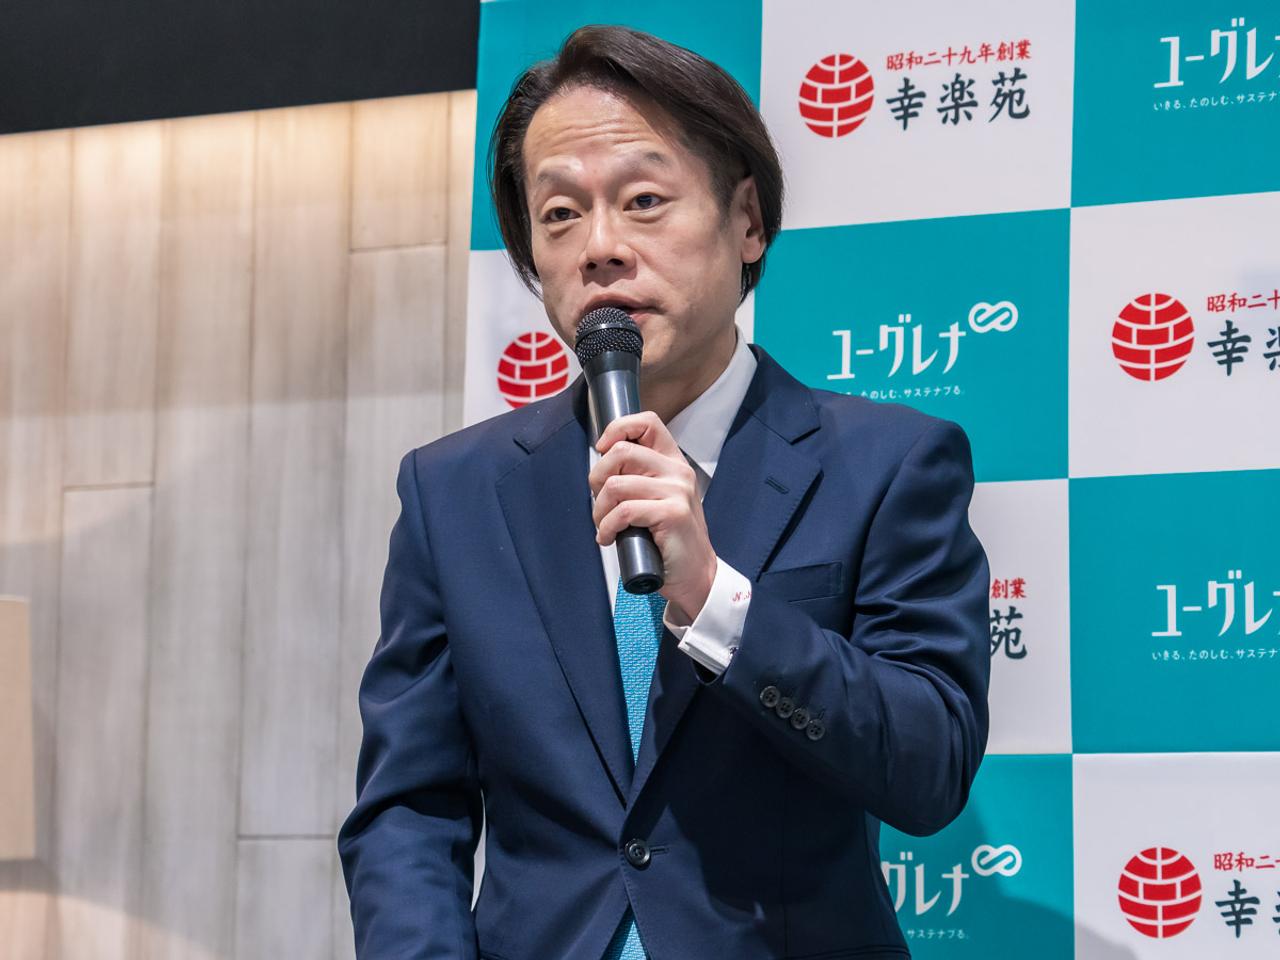 Noboru Niida, president of Kourakuen HD.